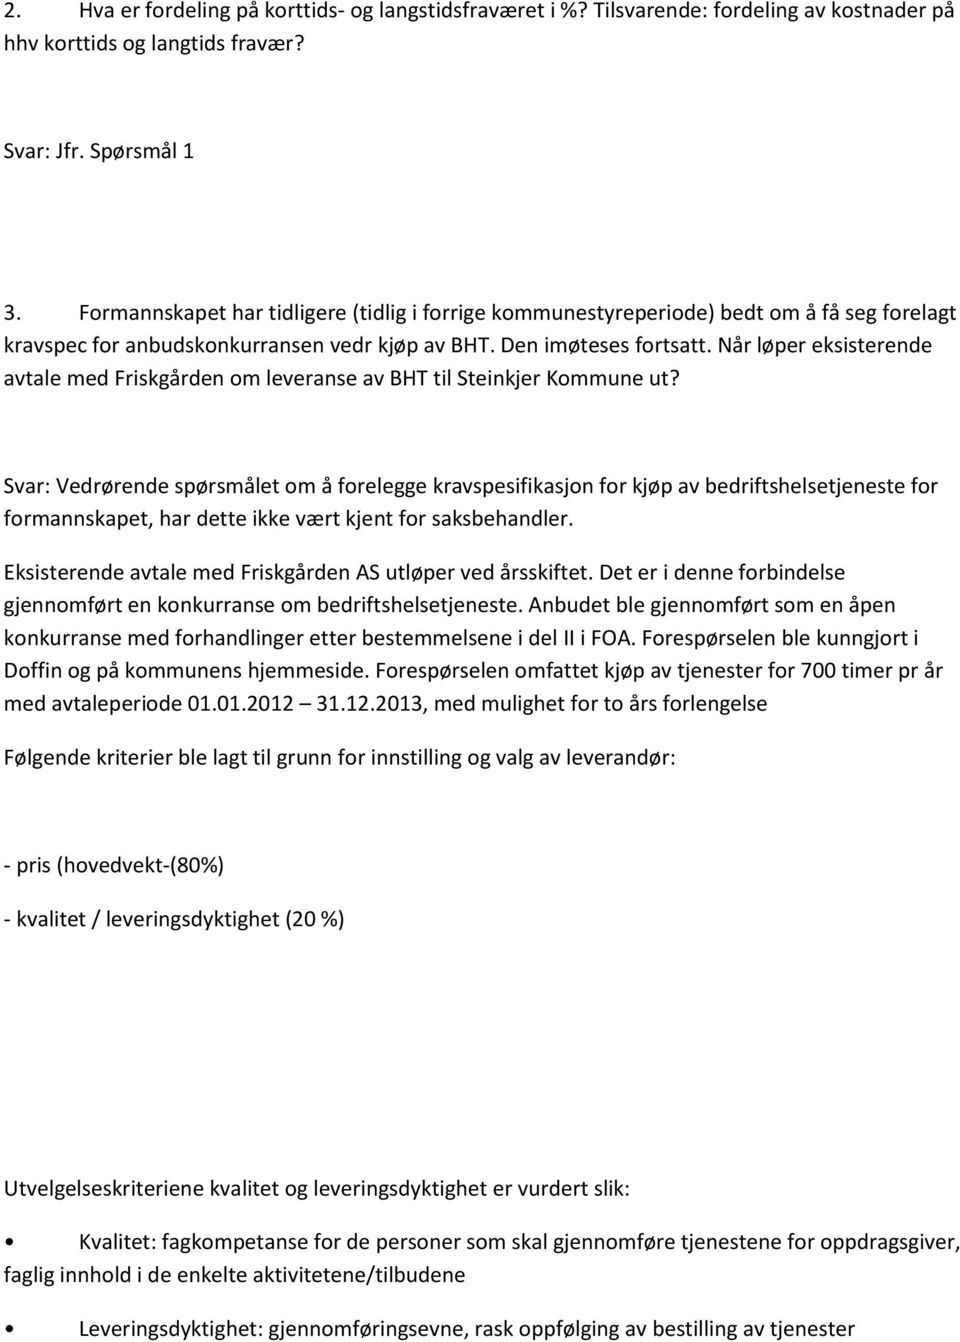 Når løper eksisterende avtale med Friskgården om leveranse av BHT til Steinkjer Kommune ut?